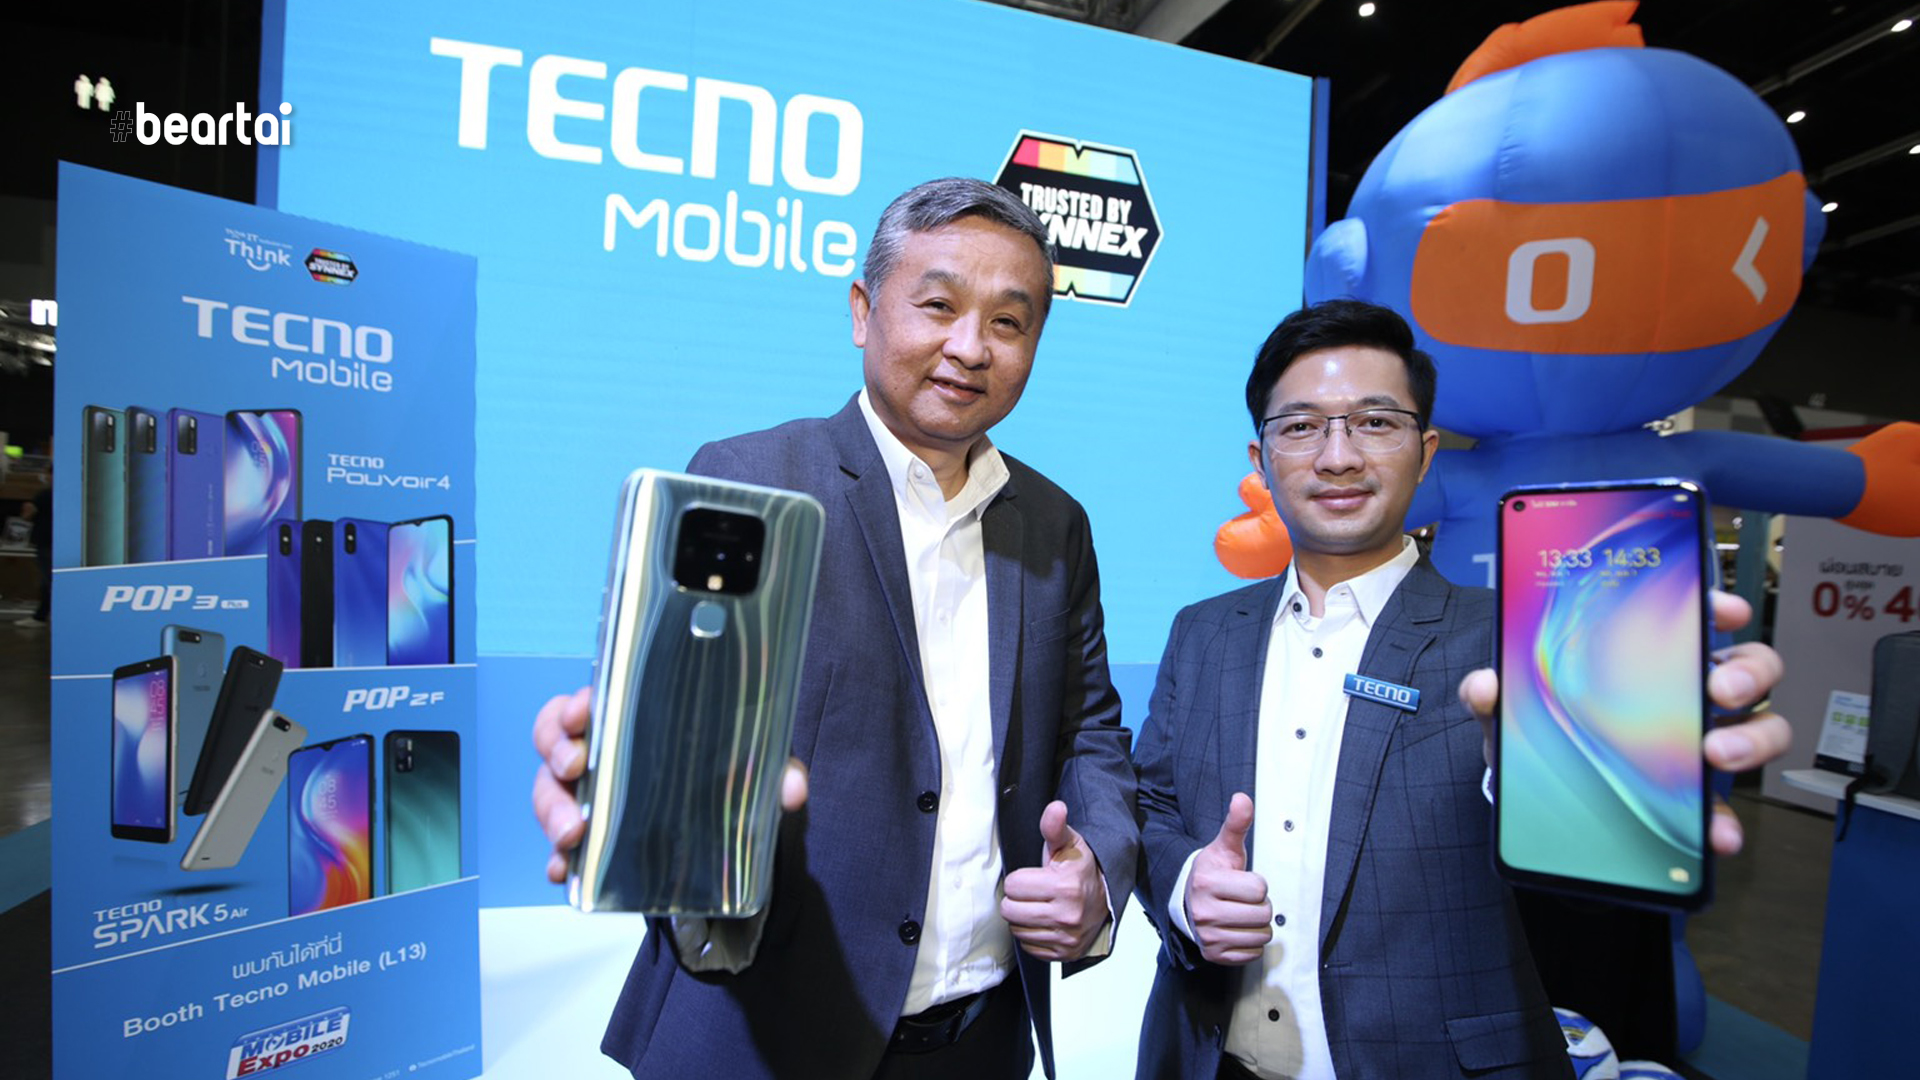 ซินเน็คฯ จับมือ TECNO Mobile ขยายพอร์ตสมาร์ตโฟนทั่วประเทศ พร้อมเปิดตัว SPARK 6 Series